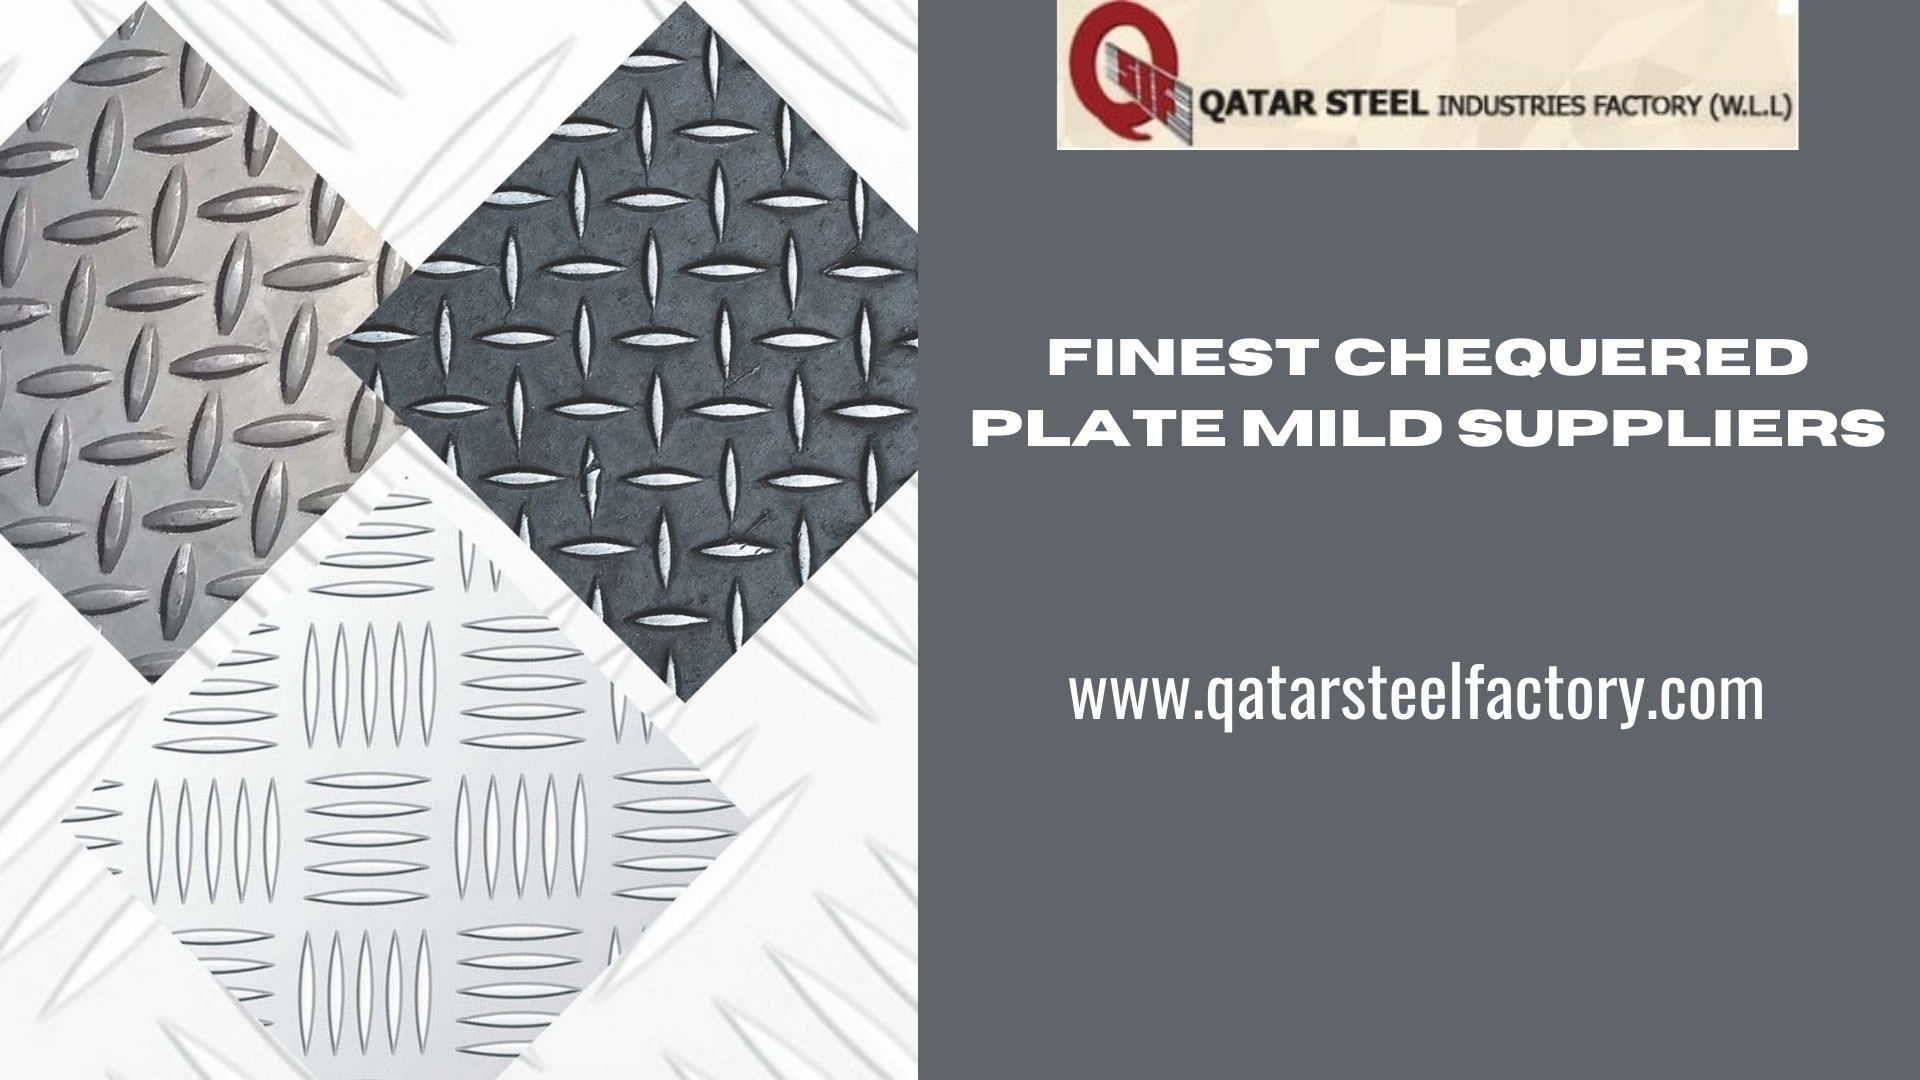 Finest Chequered Plate Mild Suppliers – www.qatarsteelfactory.com